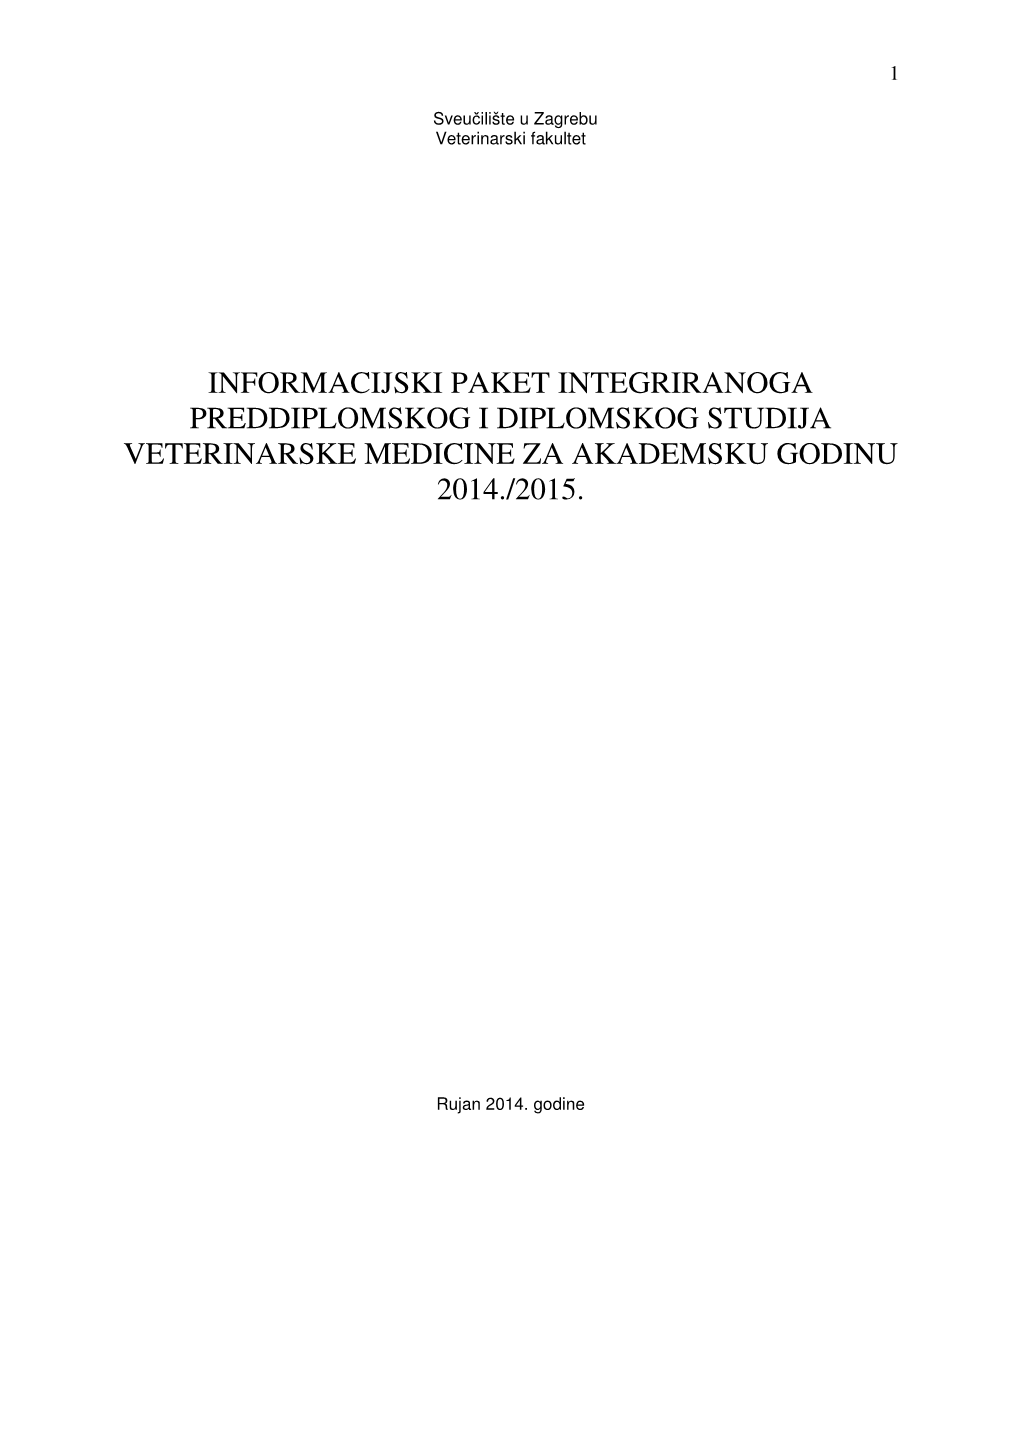 Informacijski Paket Integriranoga Preddiplomskog I Diplomskog Studija Veterinarske Medicine Za Akademsku Godinu 2014./2015